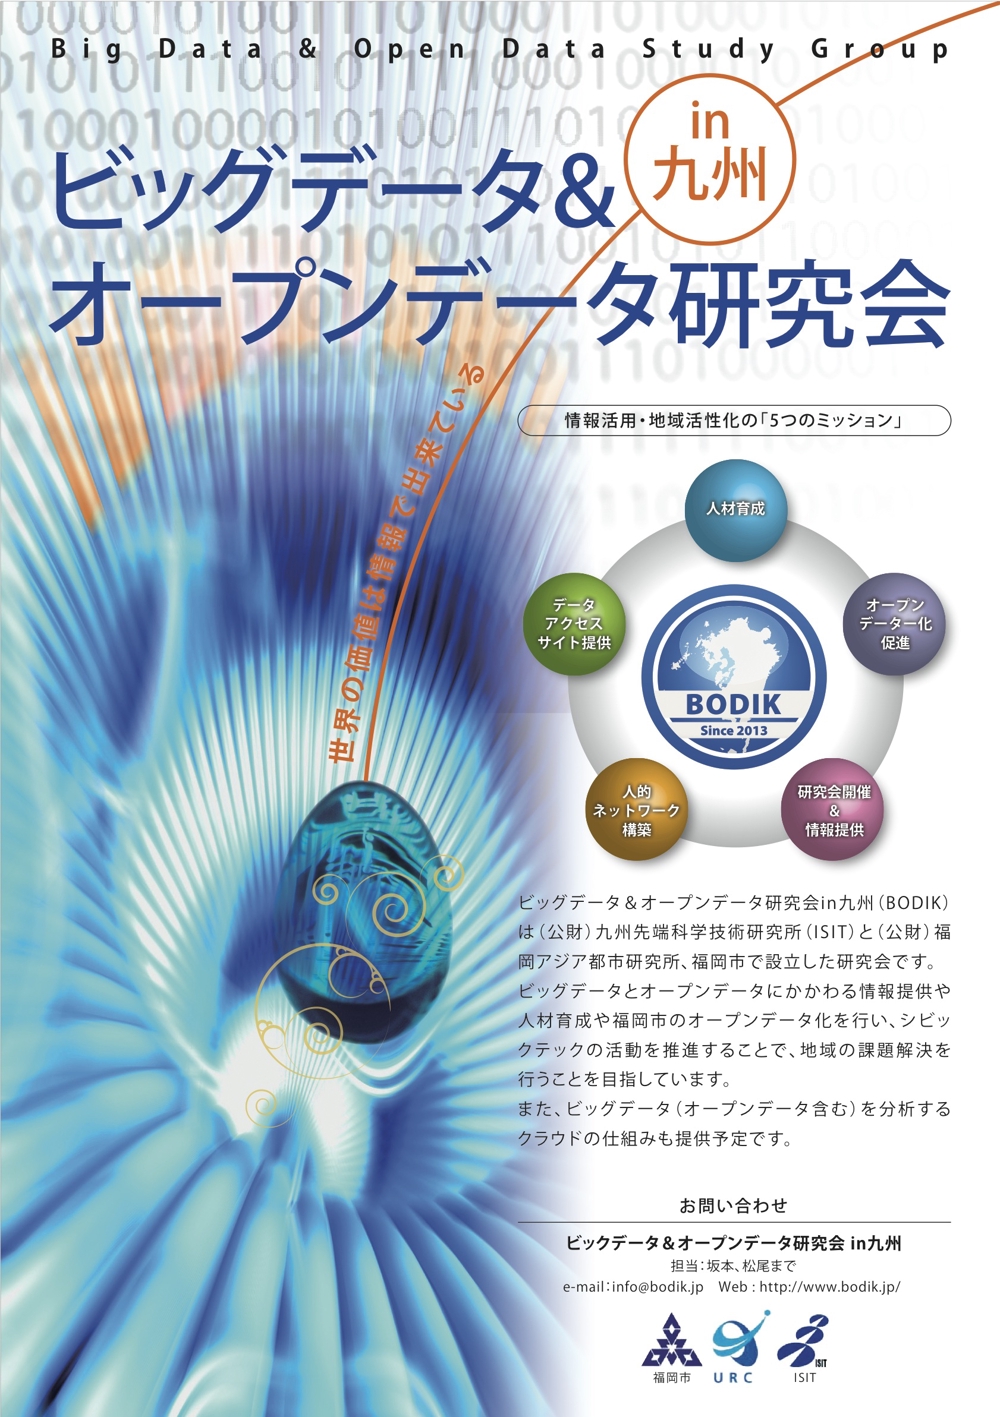 ビッグデータ&オープンデータ研究会in九州のポスターデザイン